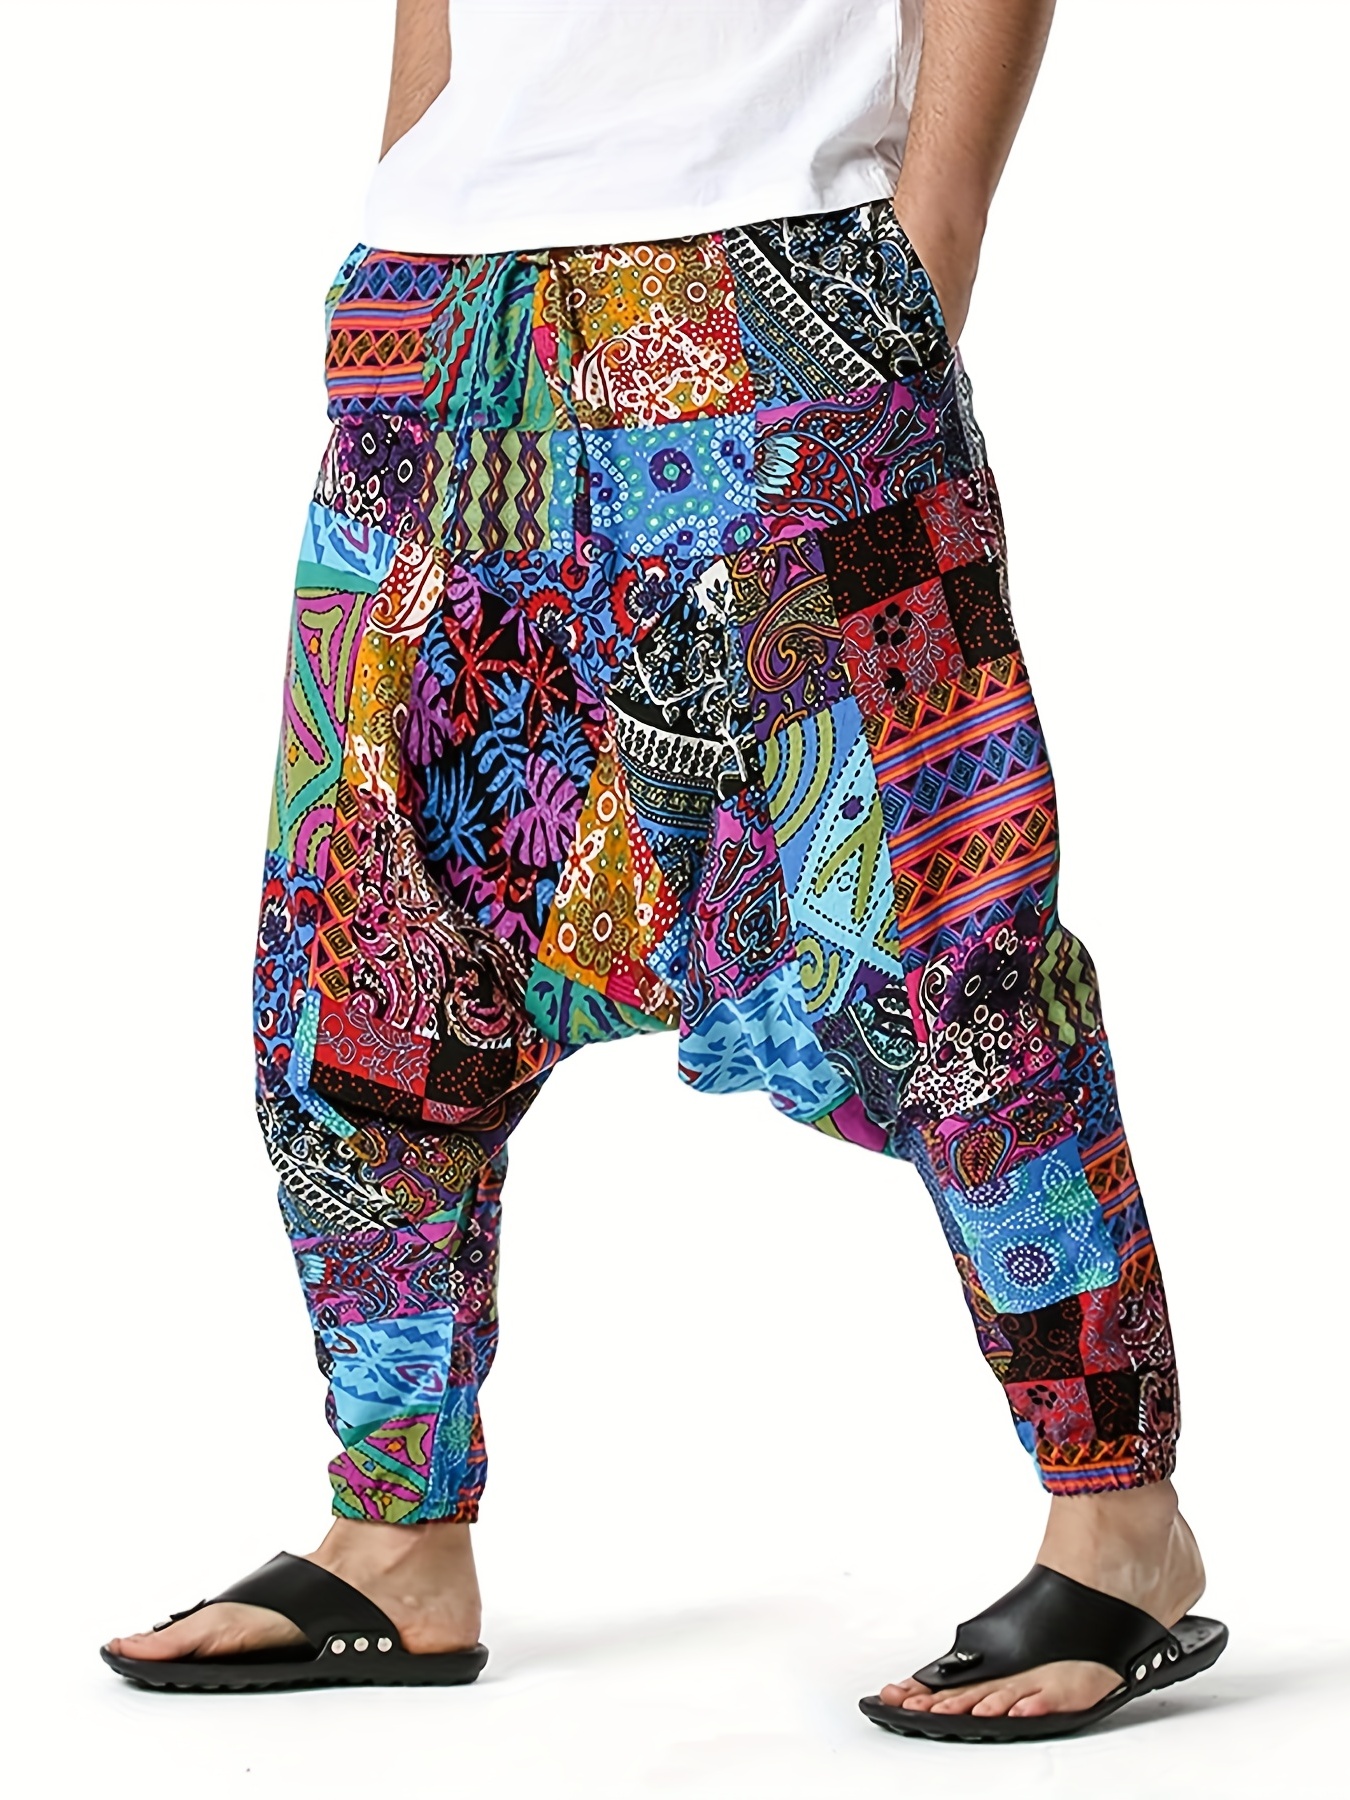 Ethnic Print Wholesale Mens Harem Pants | Wholesale Boho Clothing